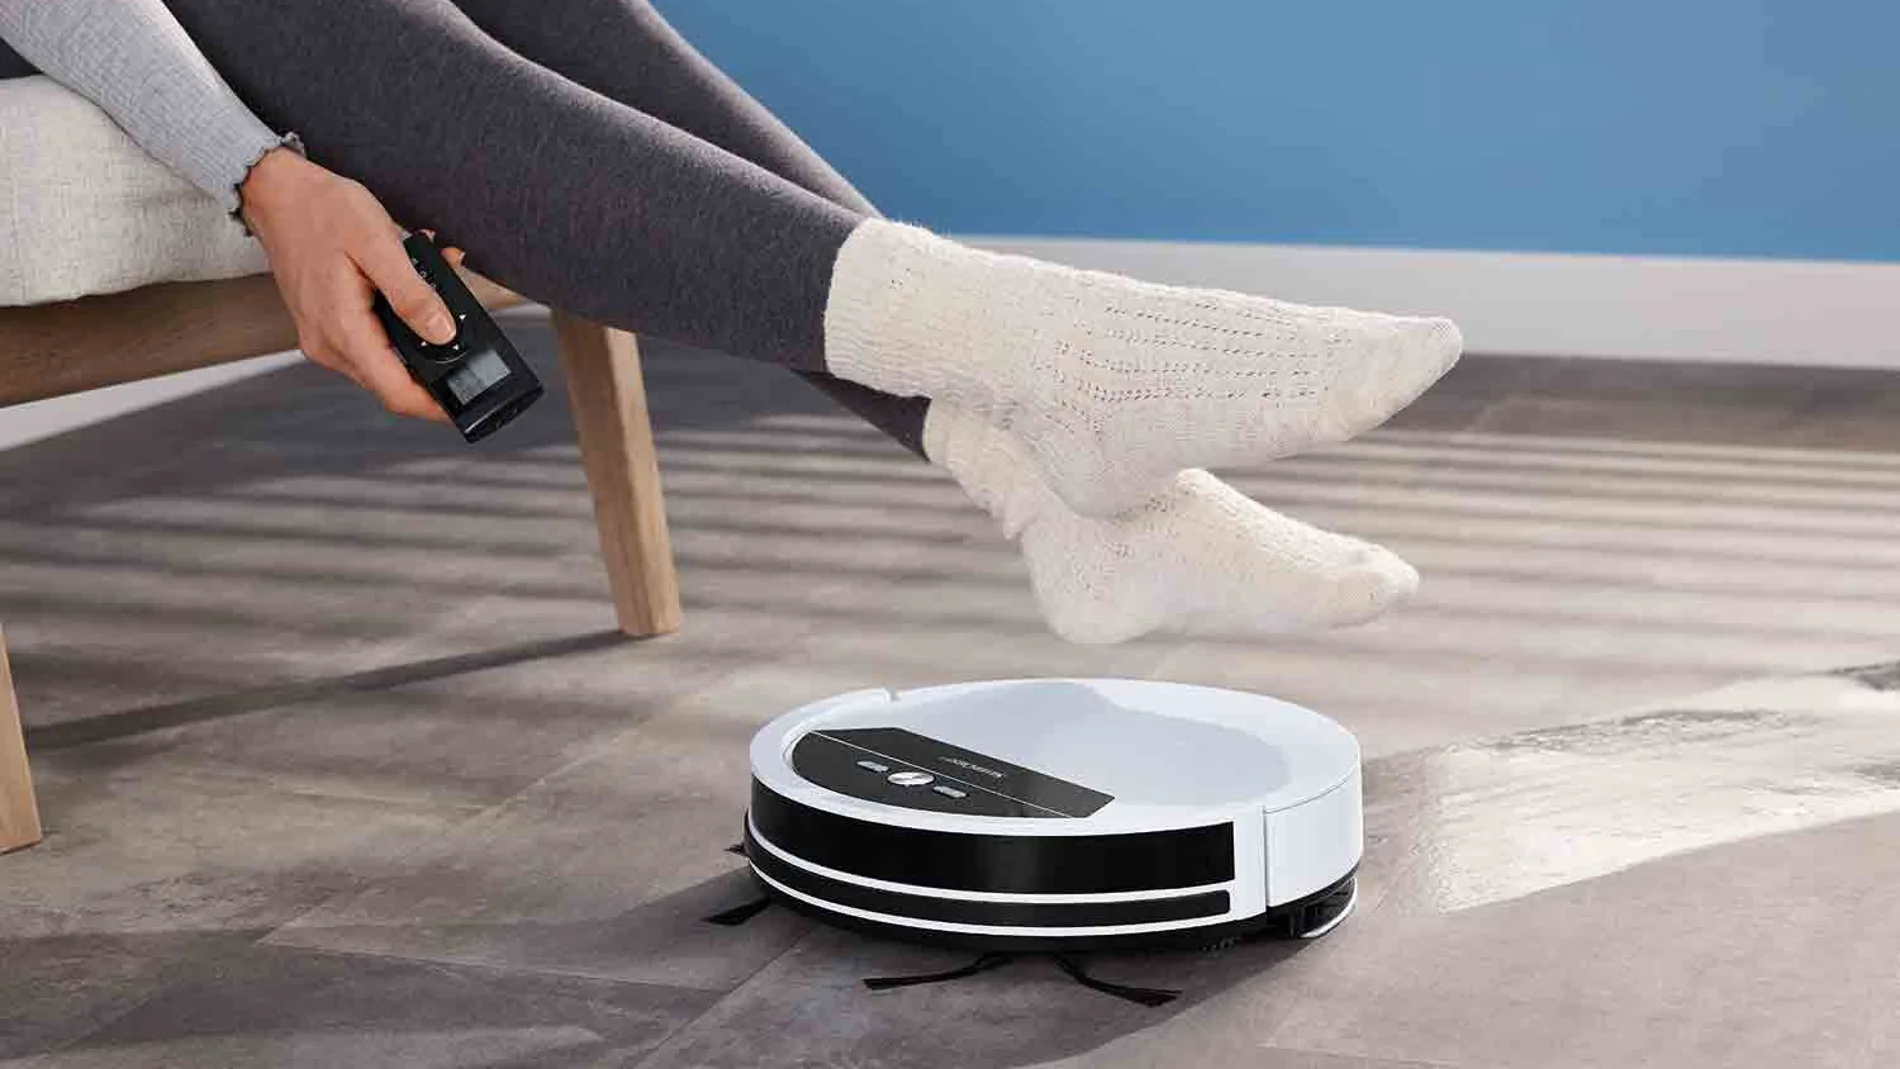 Los robots domésticos de limpieza se hacen inteligentes, así están